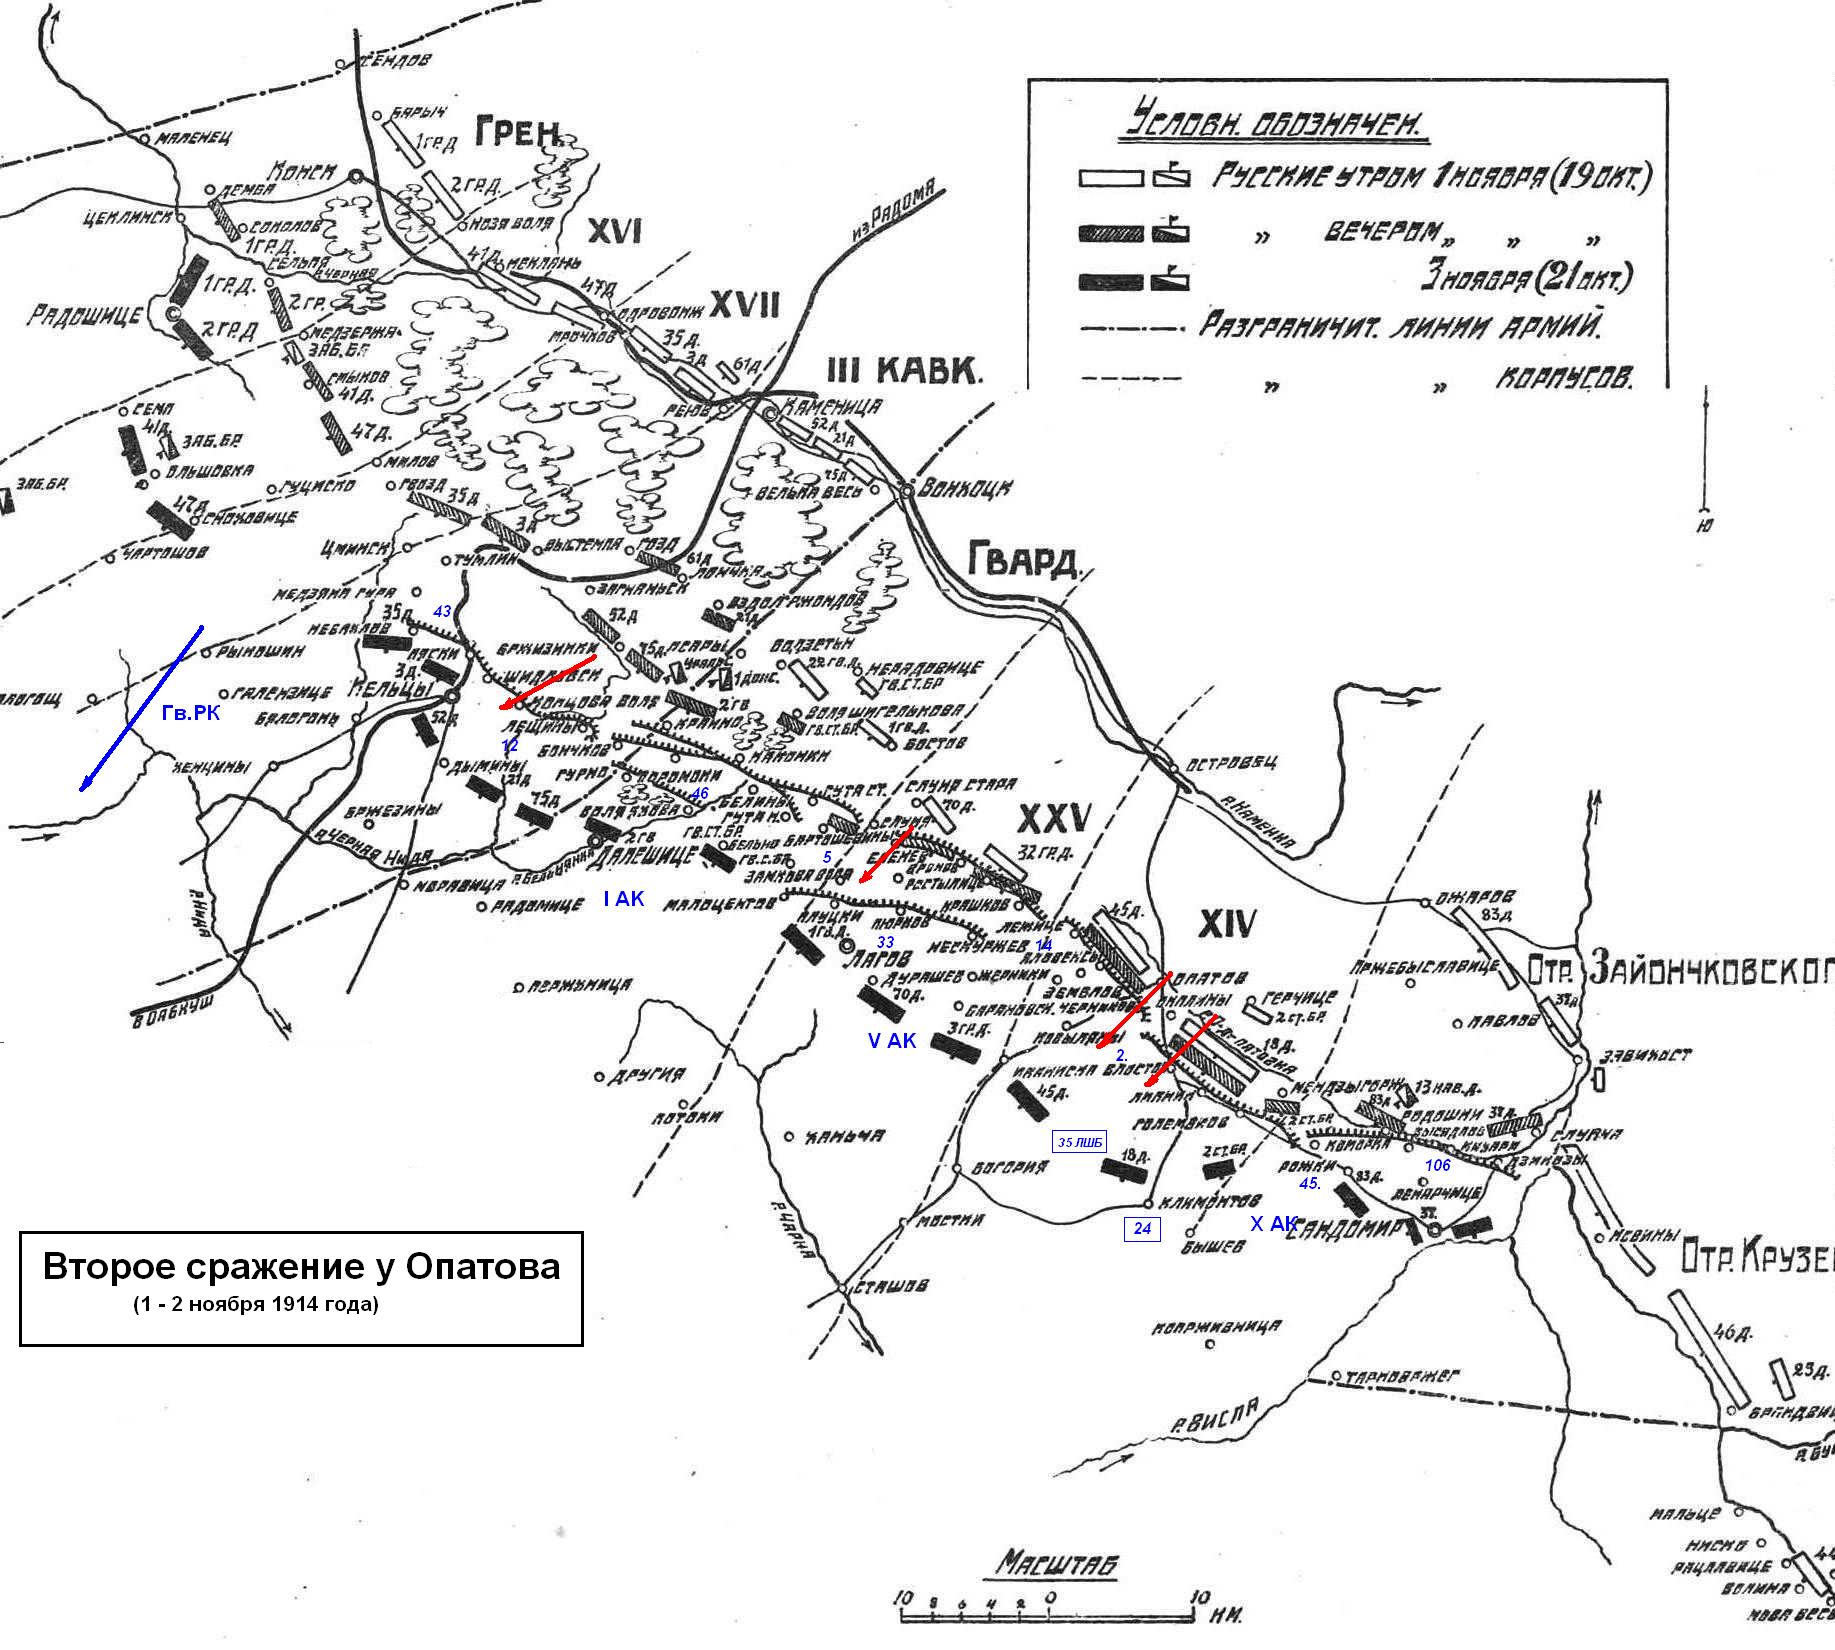 Общая схема 2-го сражения при Опатове, 1 - 2 ноября 1914